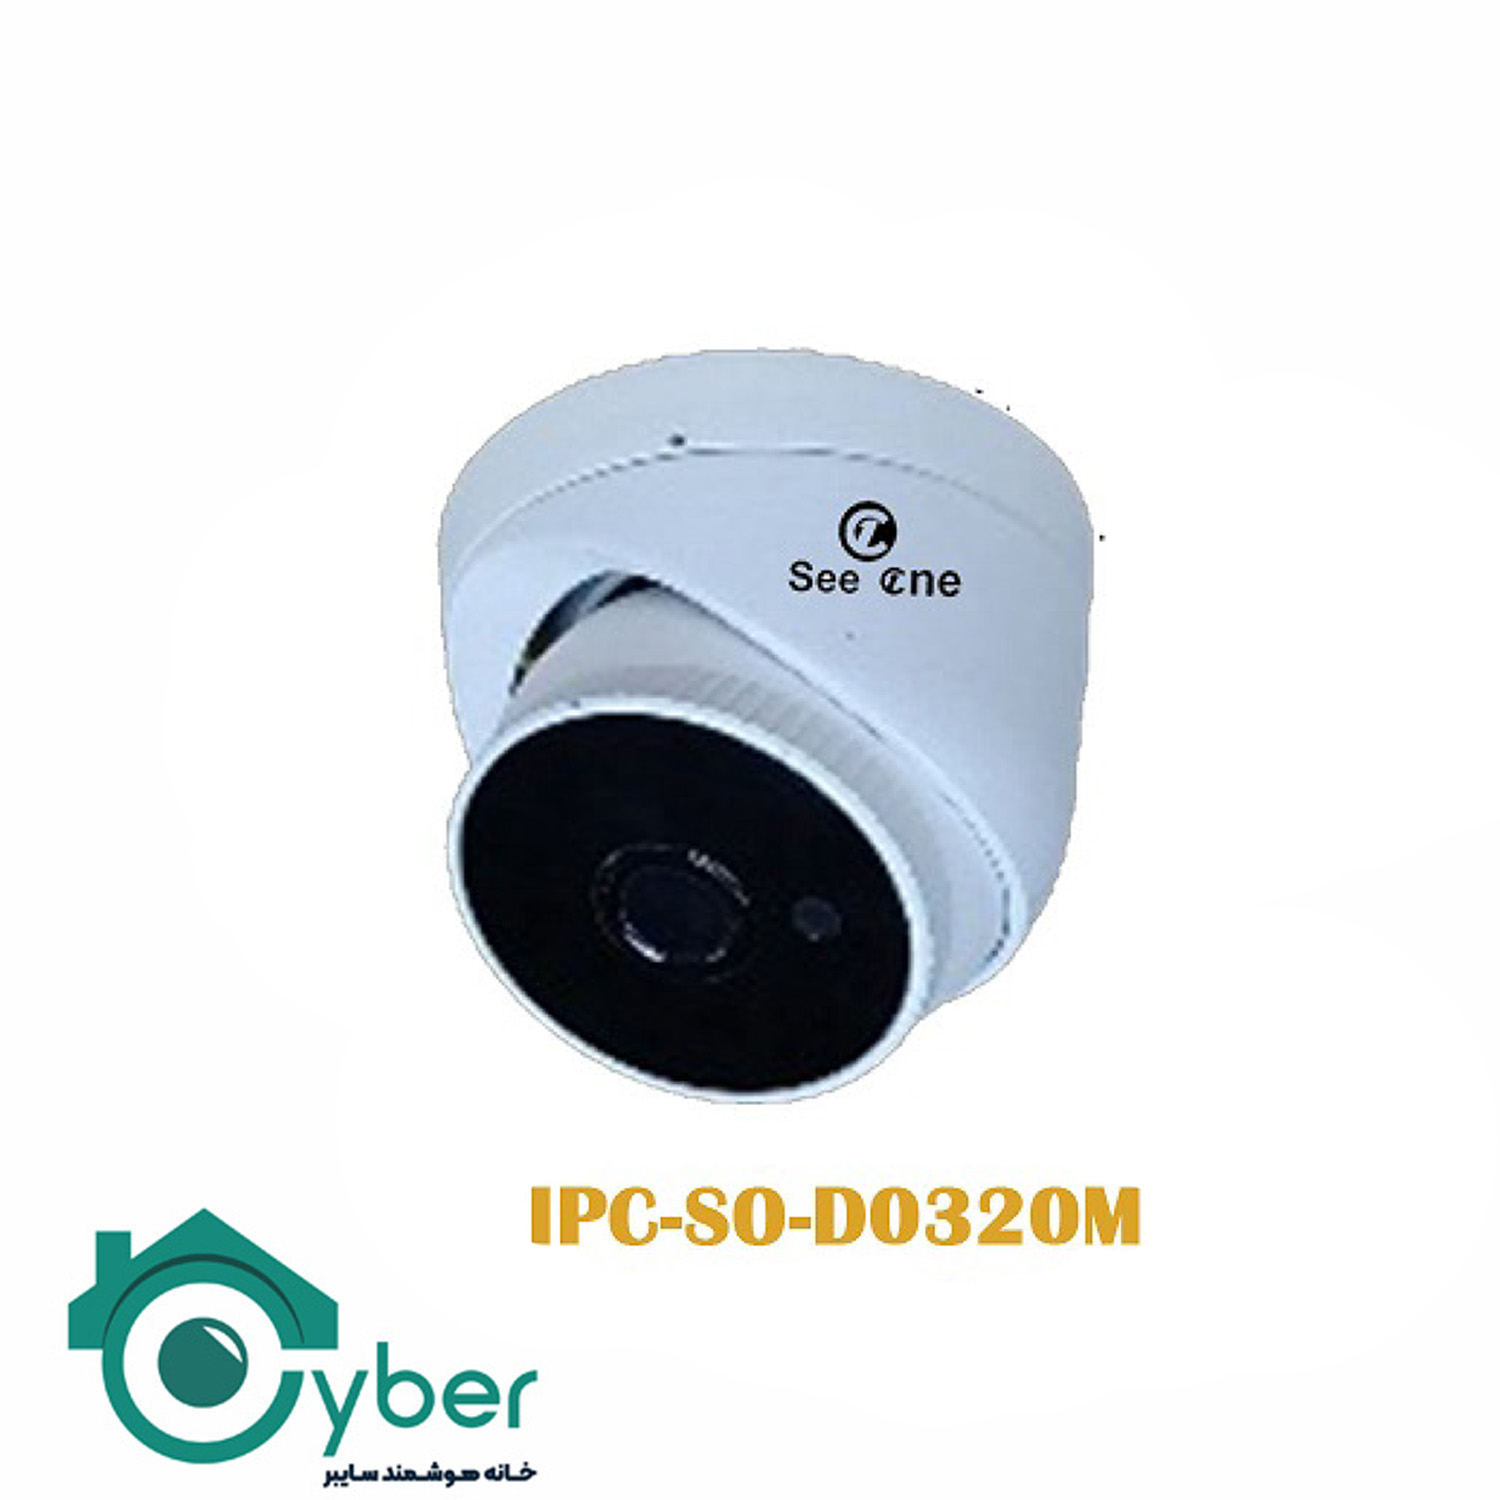 دوربین تحت شبکه See one مدل IPC-S0-D0320M - سیوان